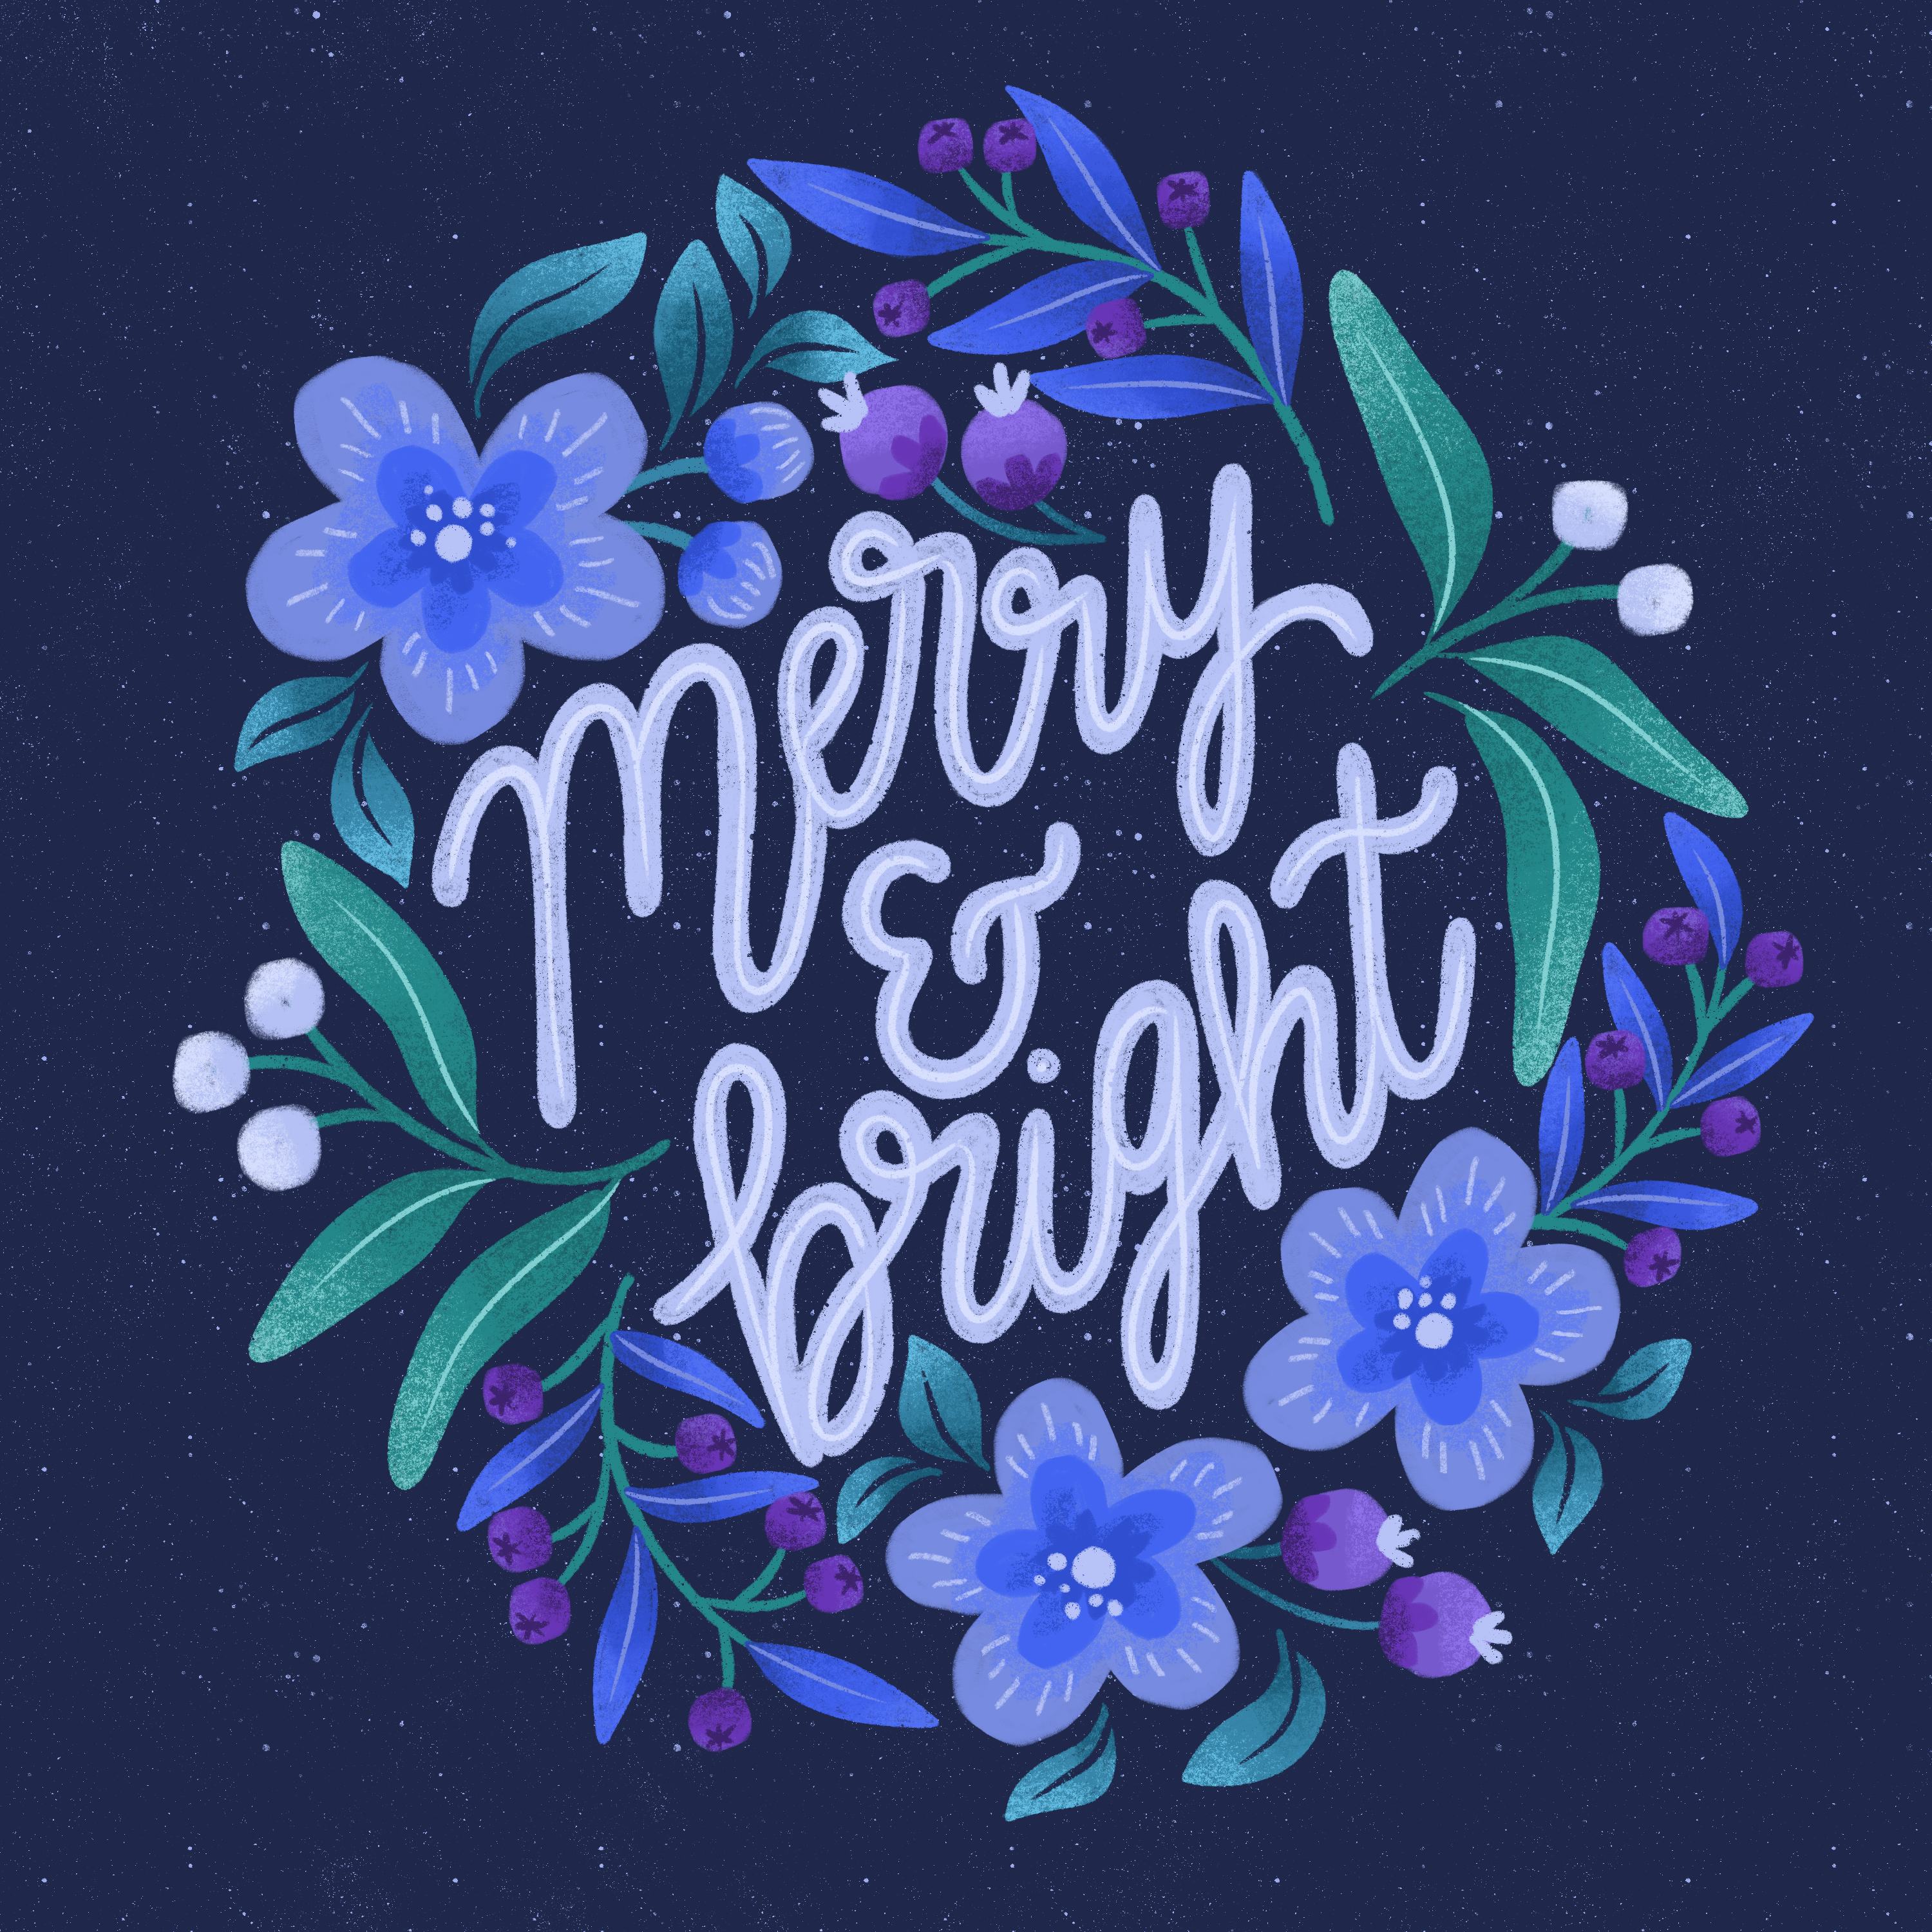 "Merry and bright" umgeben von illustrierten Blumen in lila und blau